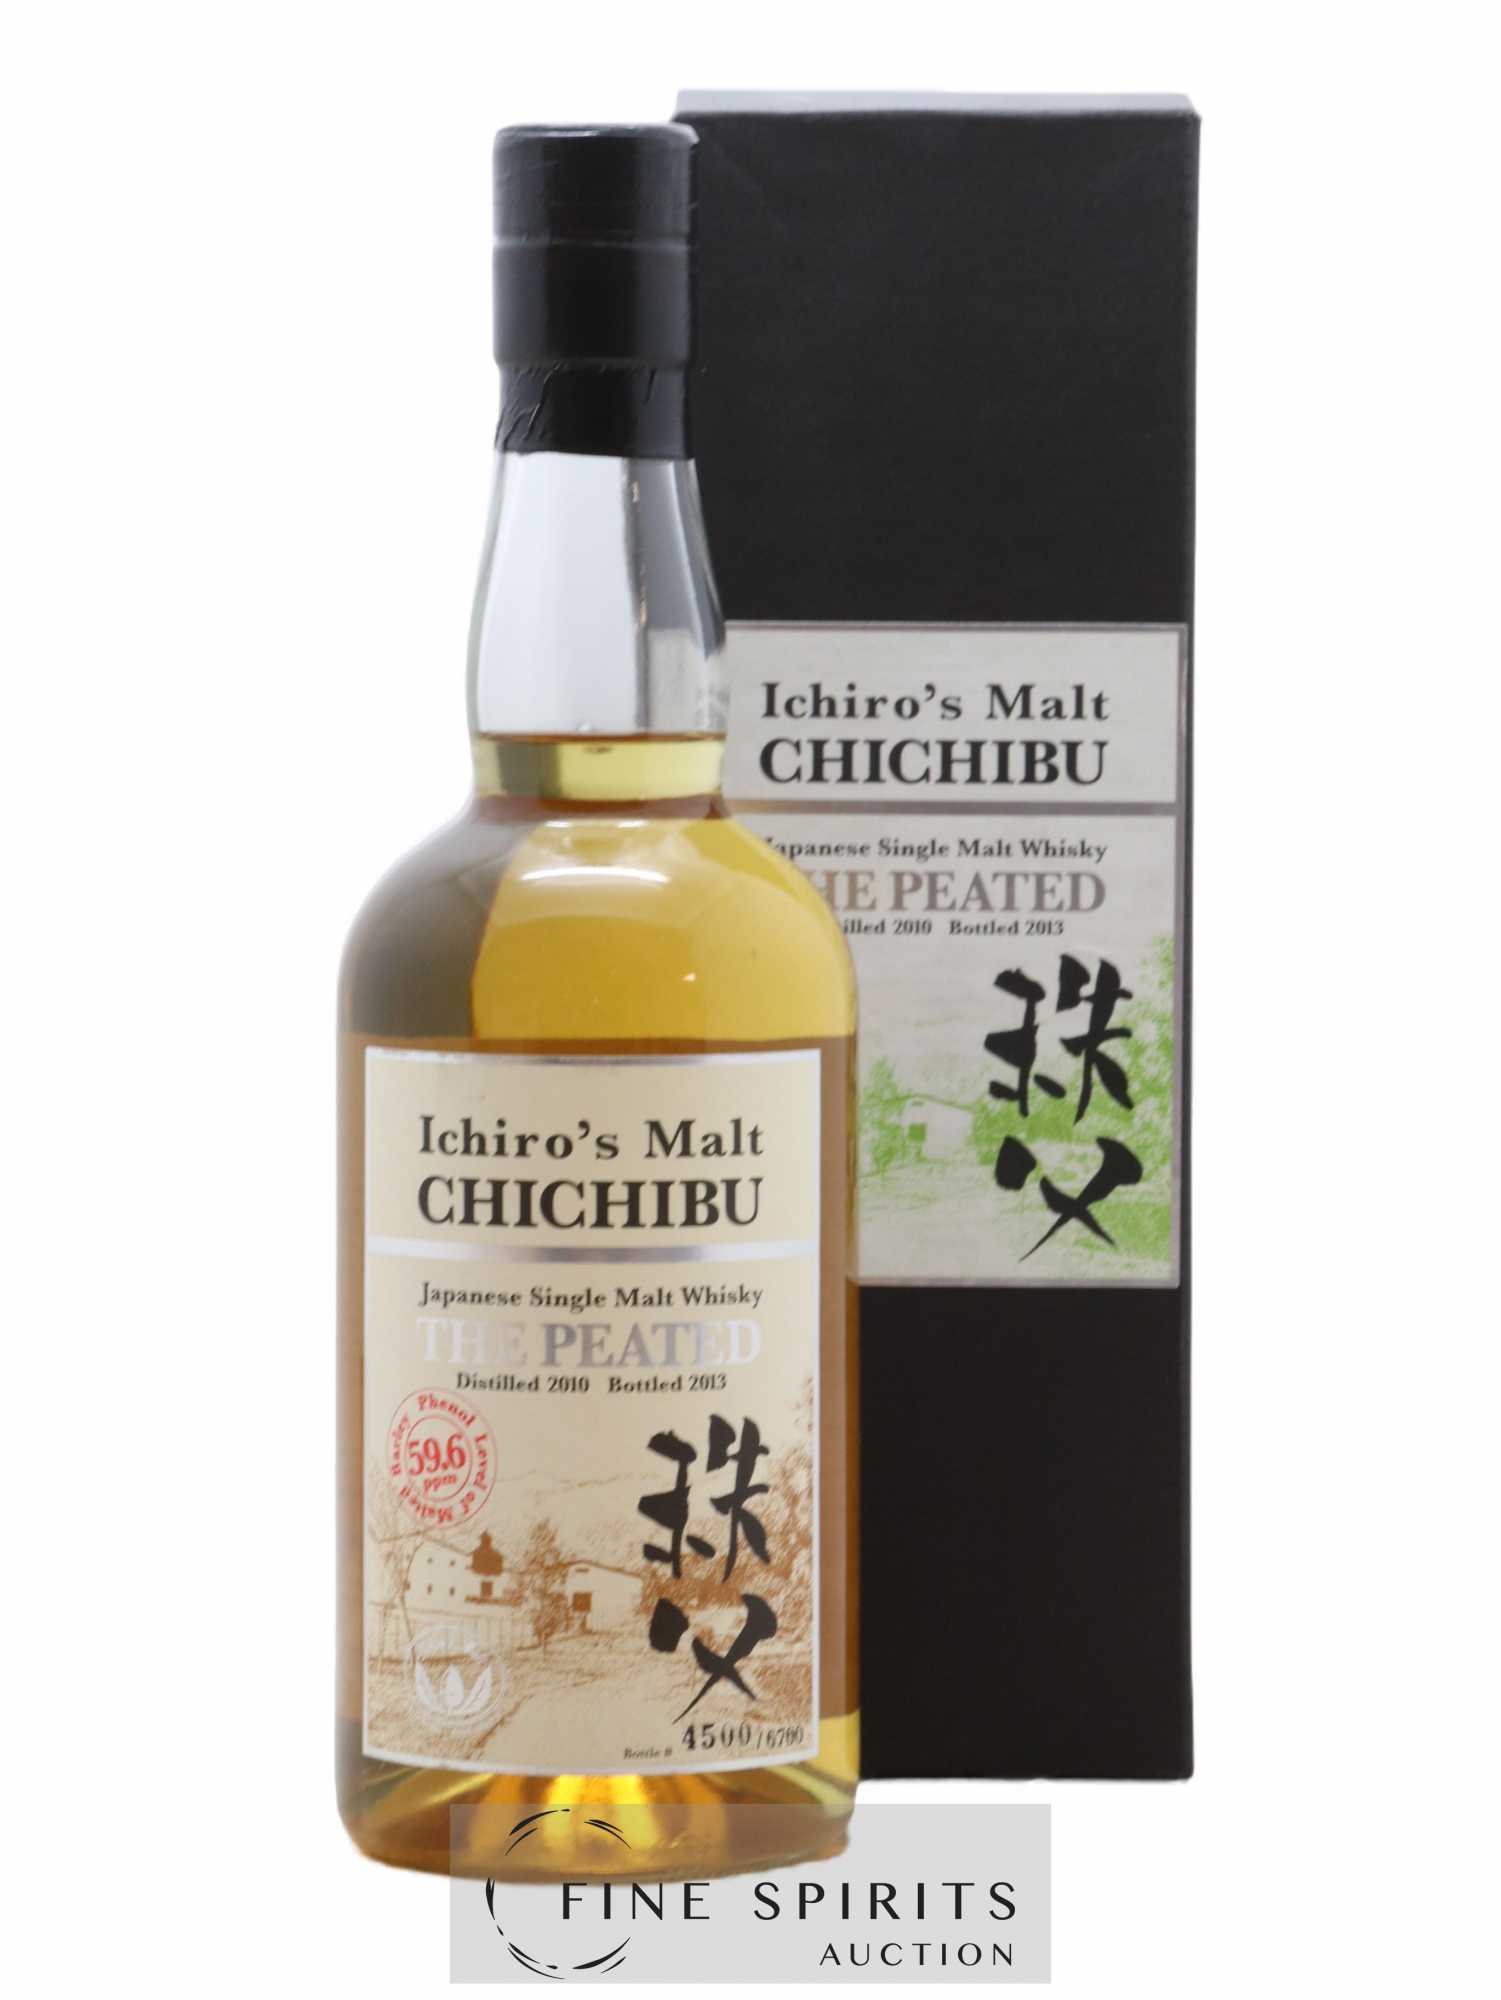 Chichibu 2010 Of. The Peated 59.6ppm - One of 6700 - bottled 2013 Ichiro's Malt 